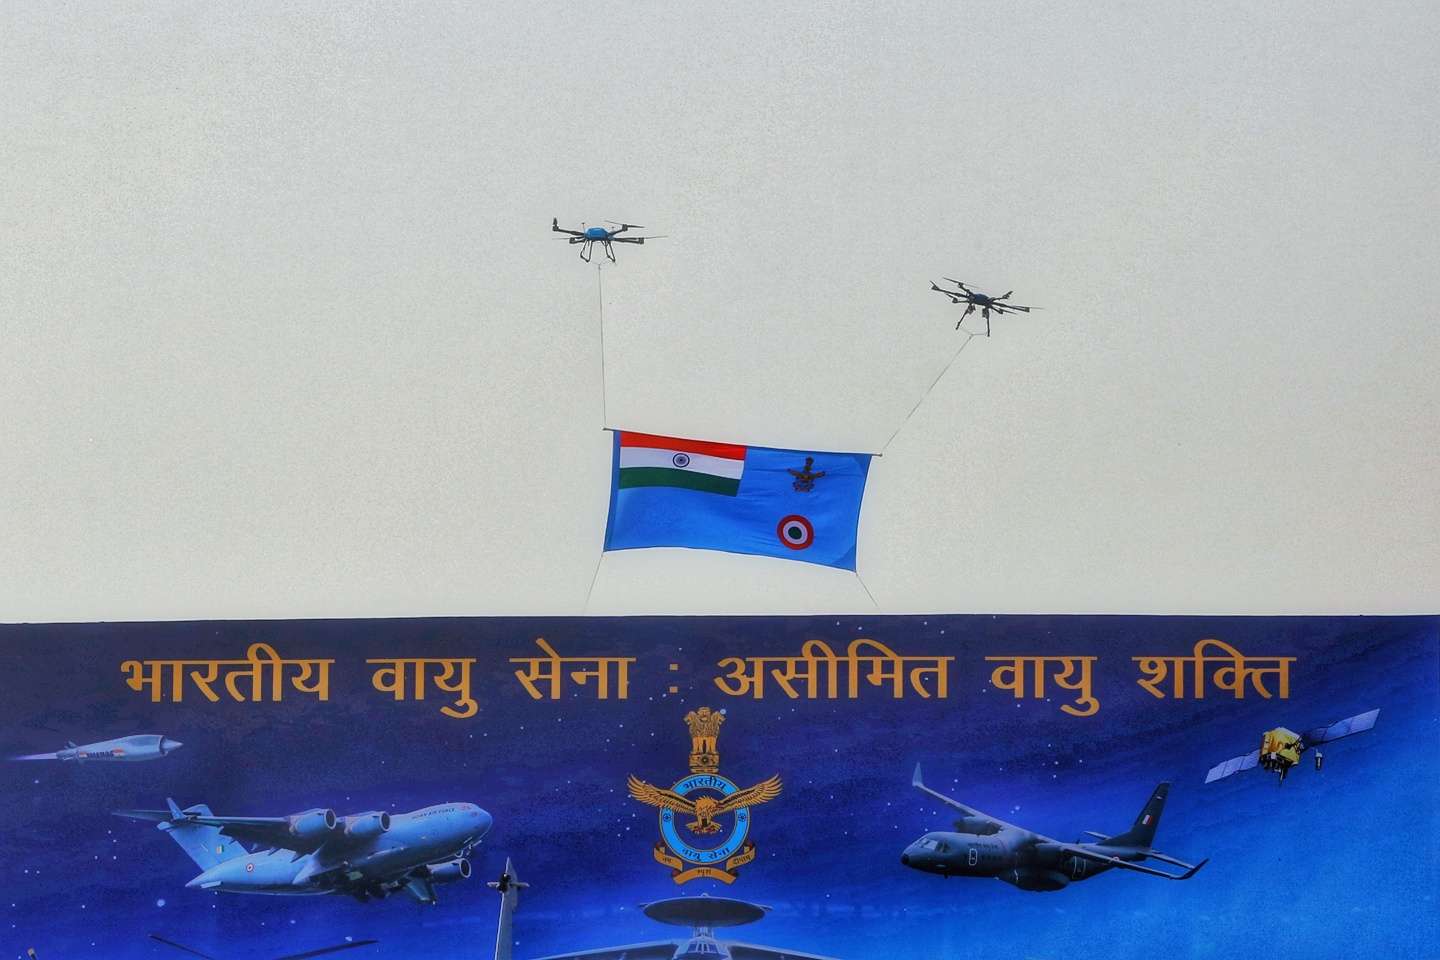 भारतीय वायु सेना की 91वीं वर्षगांठ आज ,नए ध्वज का होगा अनावरण 